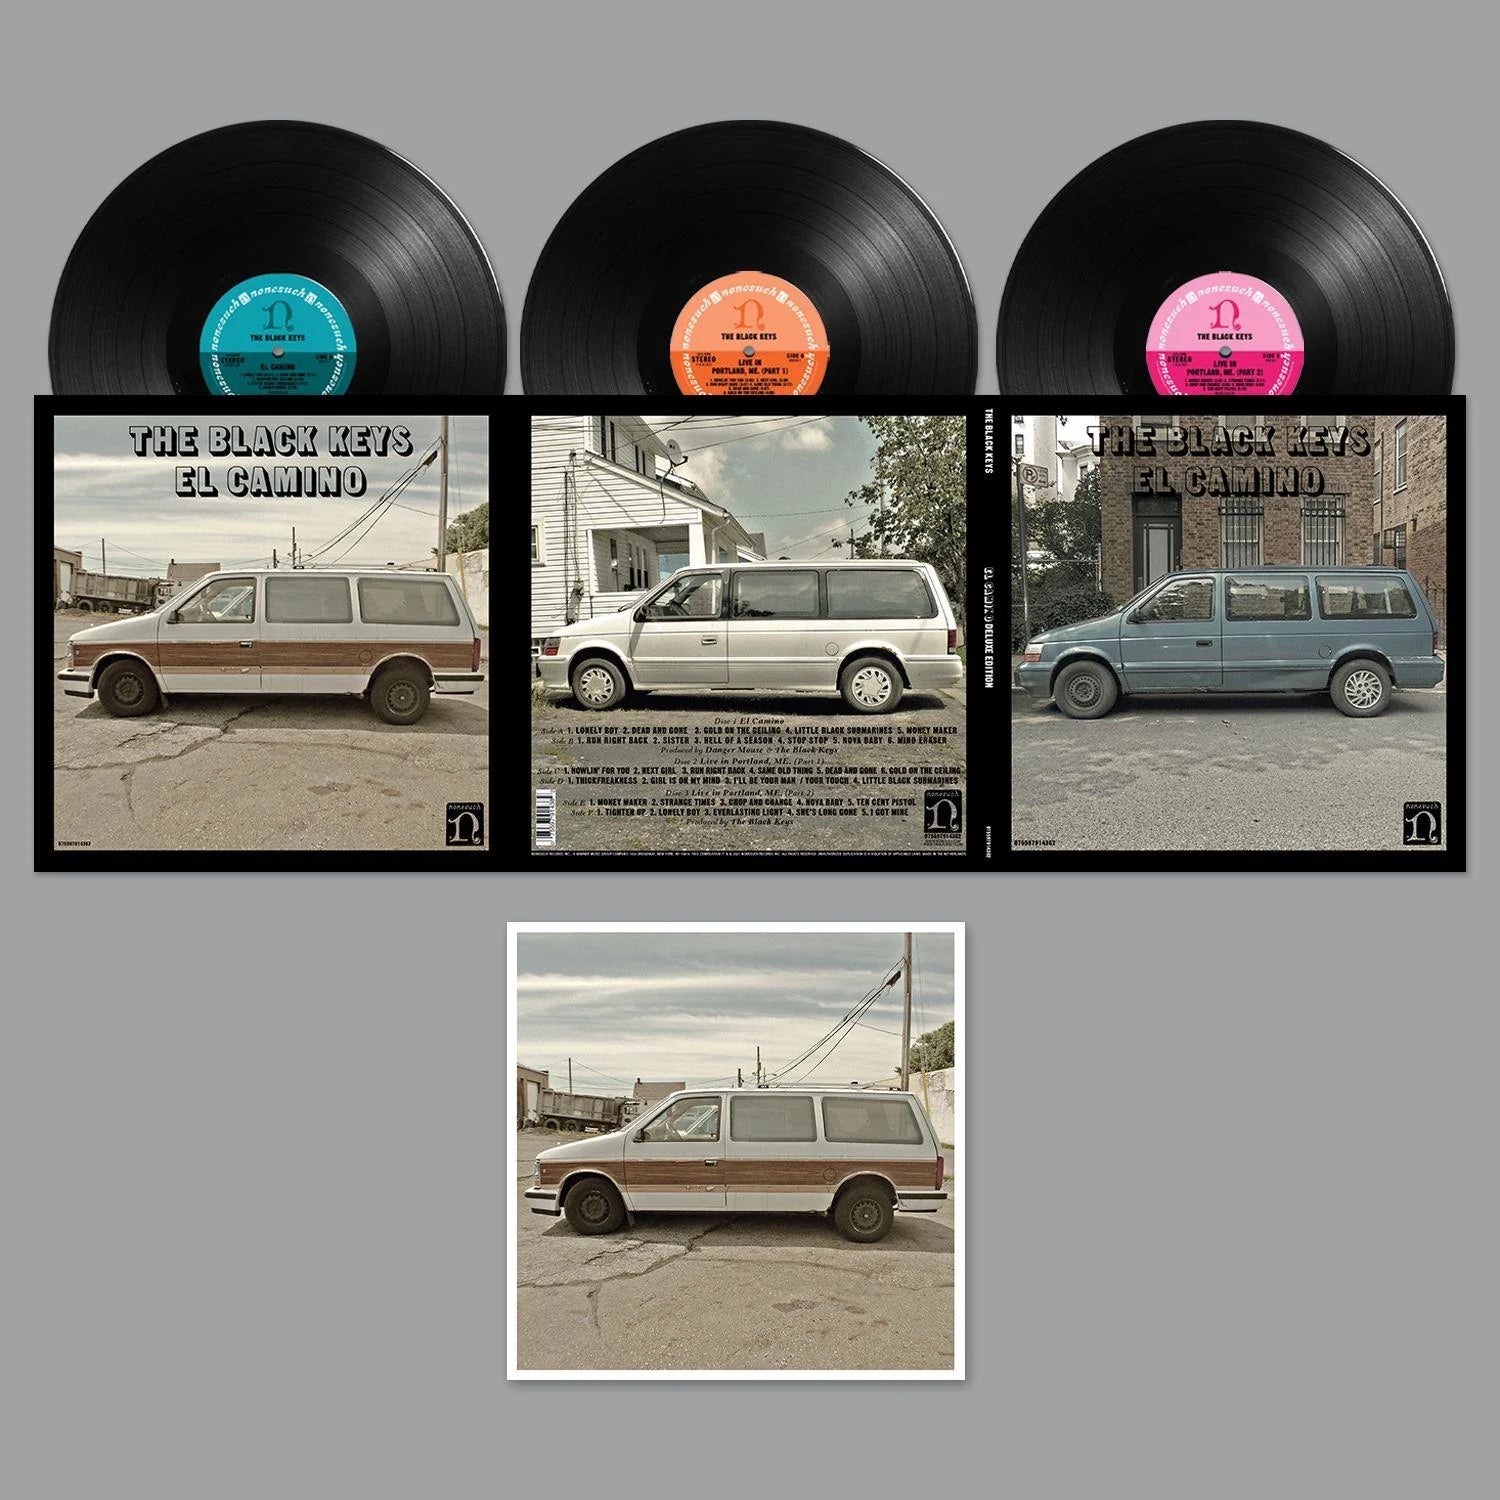 The Black Keys - El Camino (10th Anniversary Deluxe Edition): Vinyl 3LP